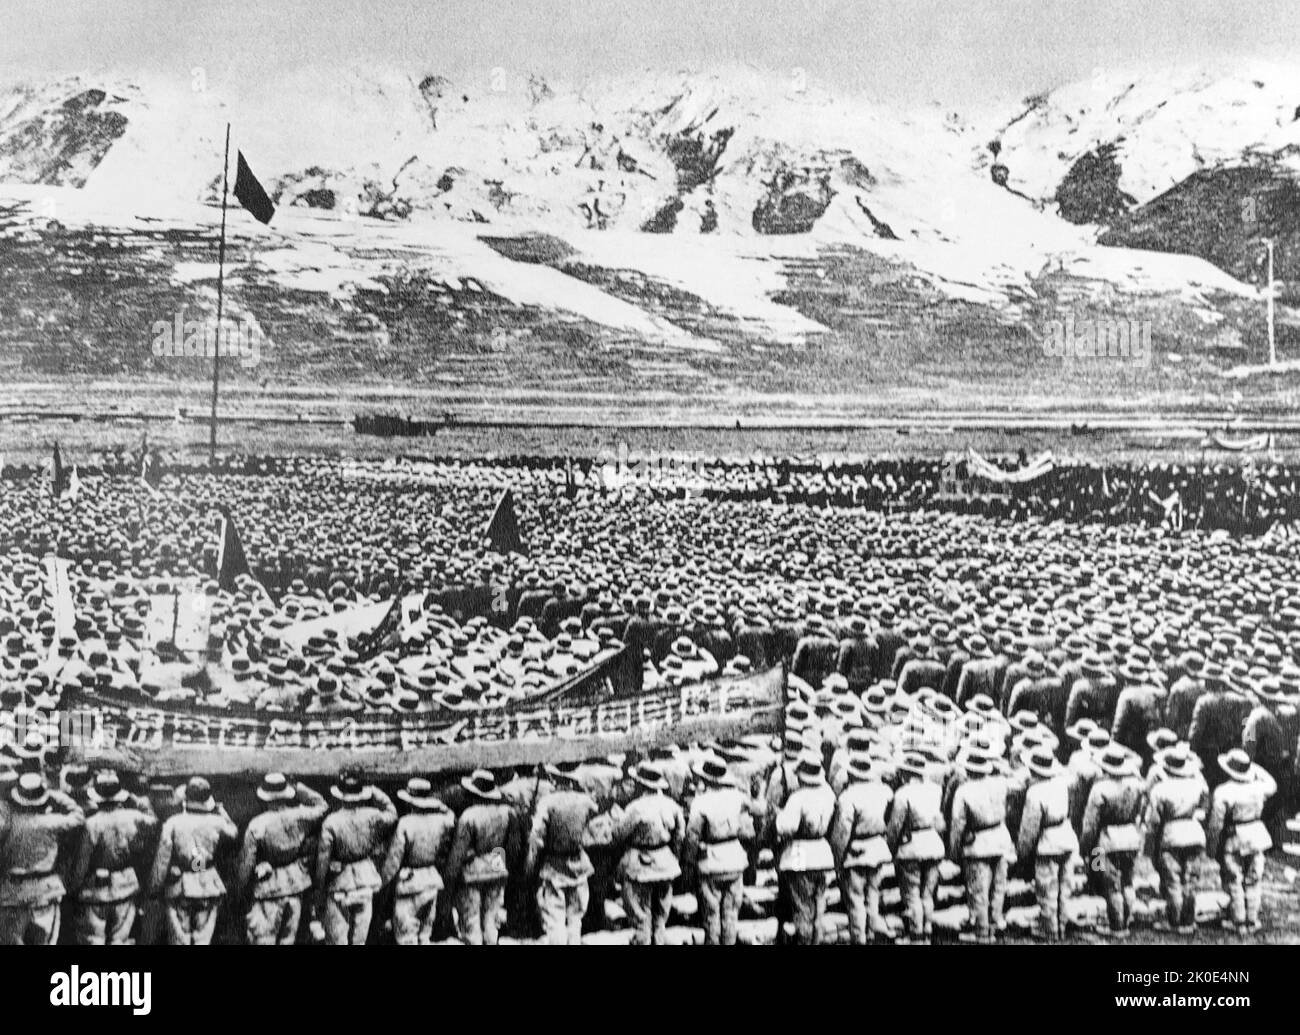 Chinesische Truppen versammelten sich zur Invasion der kommunistischen chinesischen Regierung in Tibet im Jahr 1950. Die Behauptung, Tibet sei kein unabhängiges Land, sondern lediglich ein Teil Chinas. Die kleine und schlecht ausgestattete tibetische Armee konnte keinen wirksamen Widerstand gegen die PAA (Volksbefreiungsarmee) leisten und wurde vollständig getötet oder gefangen genommen. Stockfoto